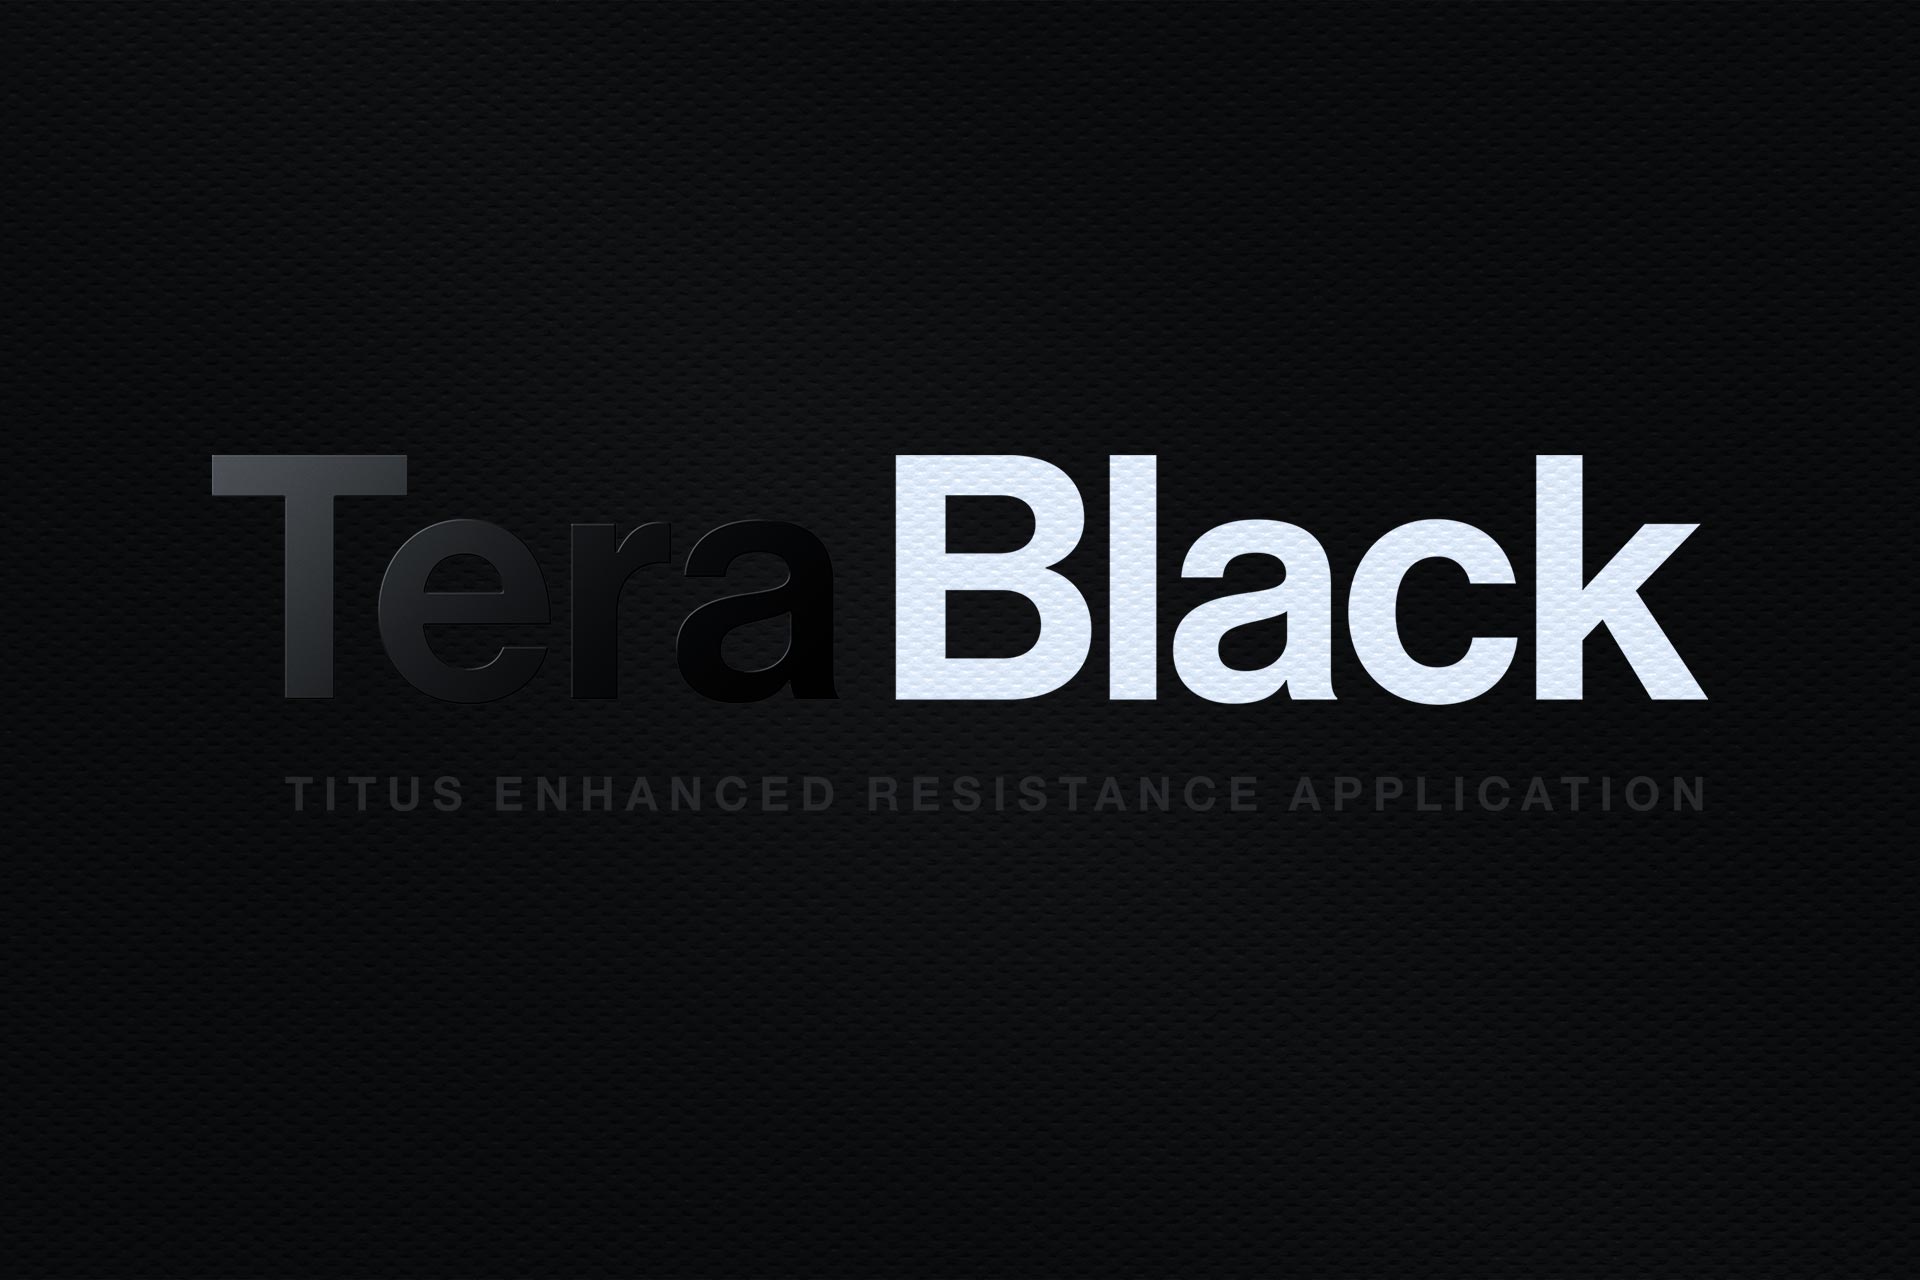 Titus TeraBlack napis na črni podlagi